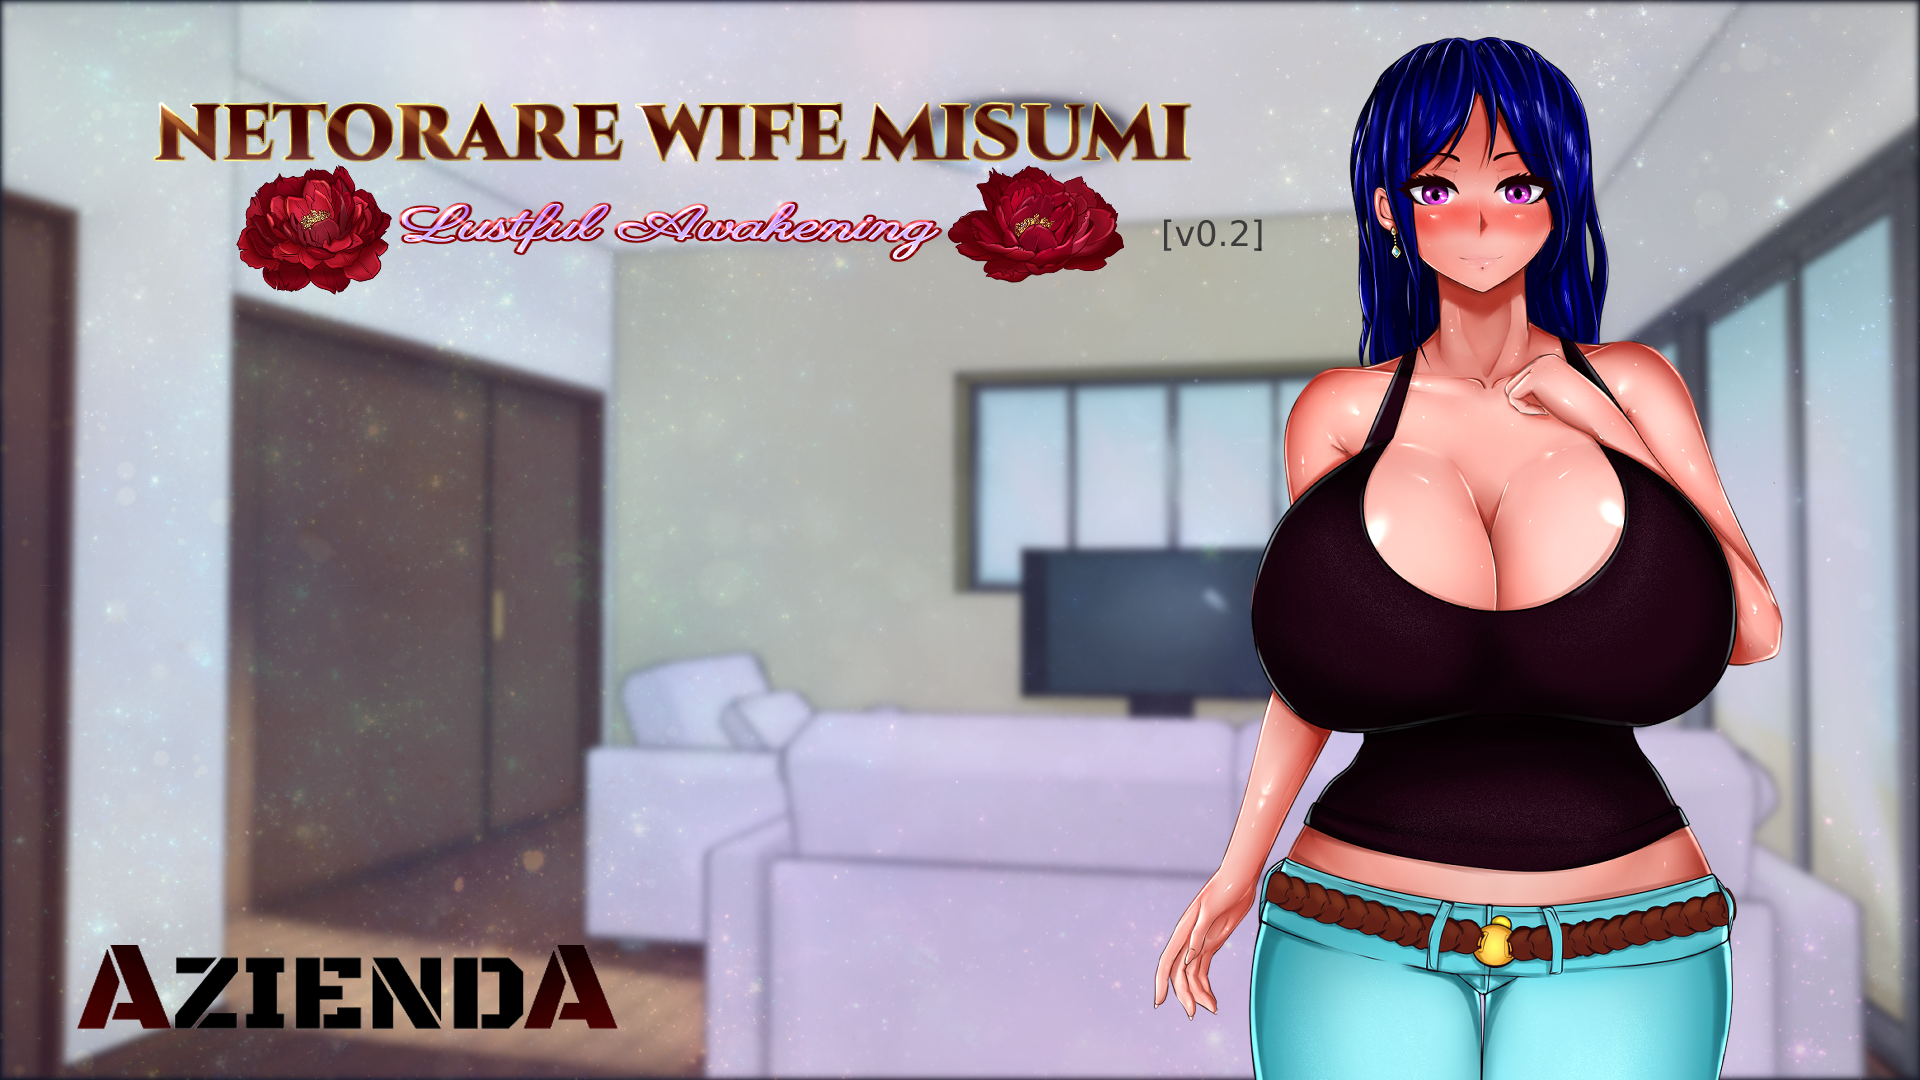 Netorare Wife Misumi - Lustful Awakening v0.2 - free game download, reviews, mega